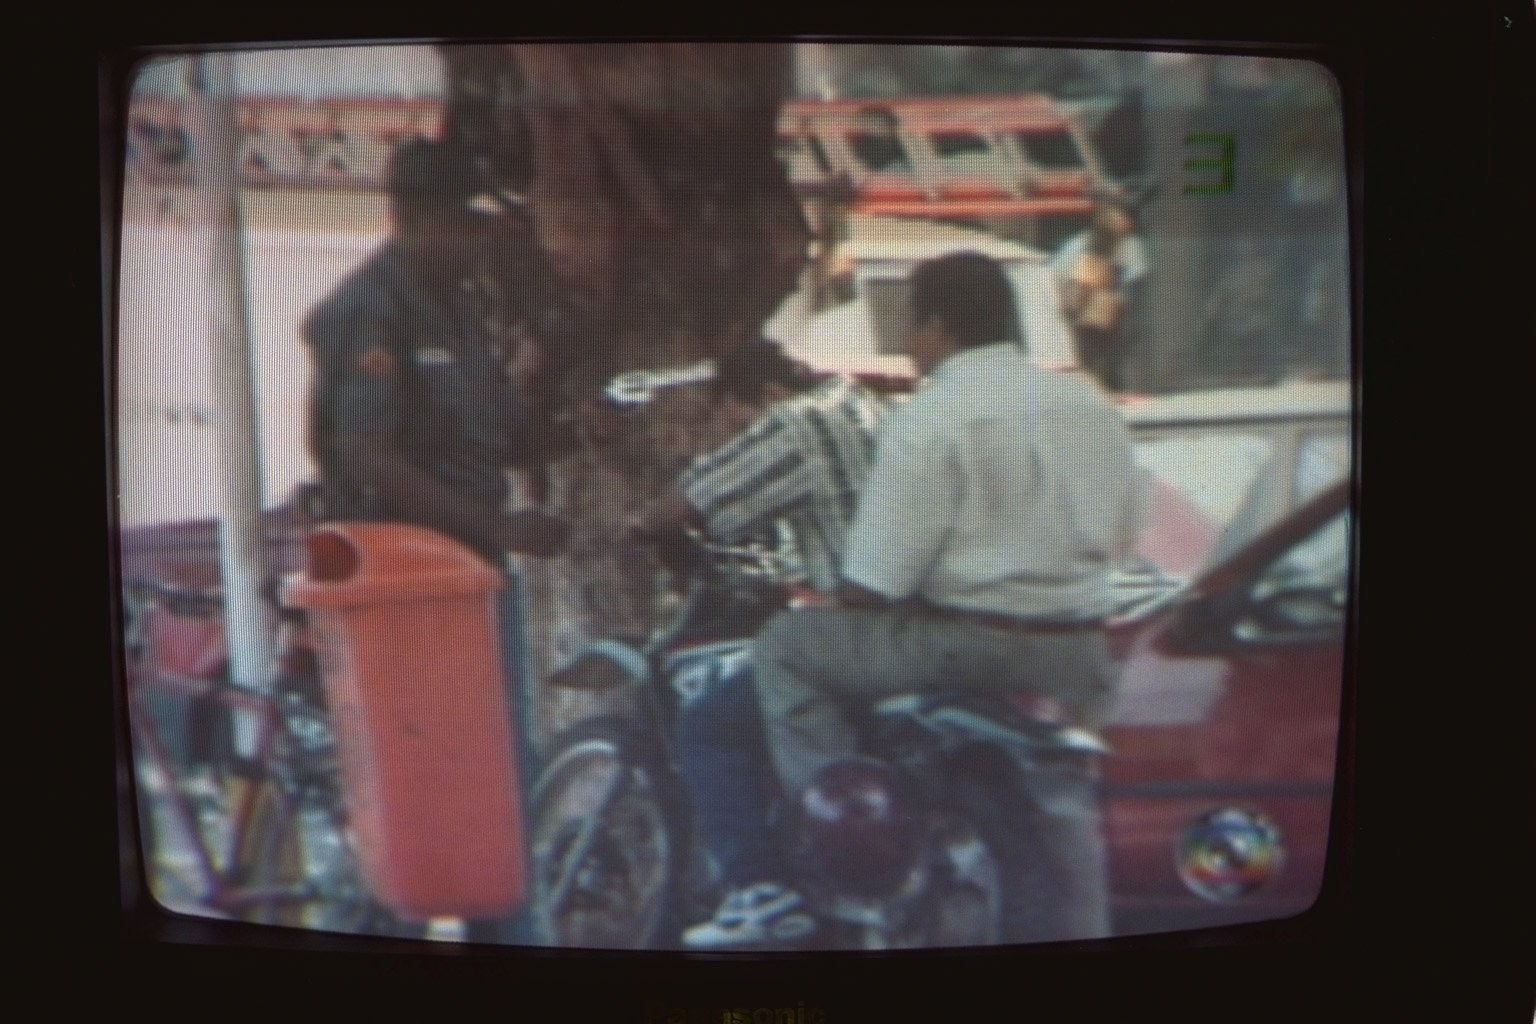 O suspeito da frente começa a cair da motocicleta, após ser baleado